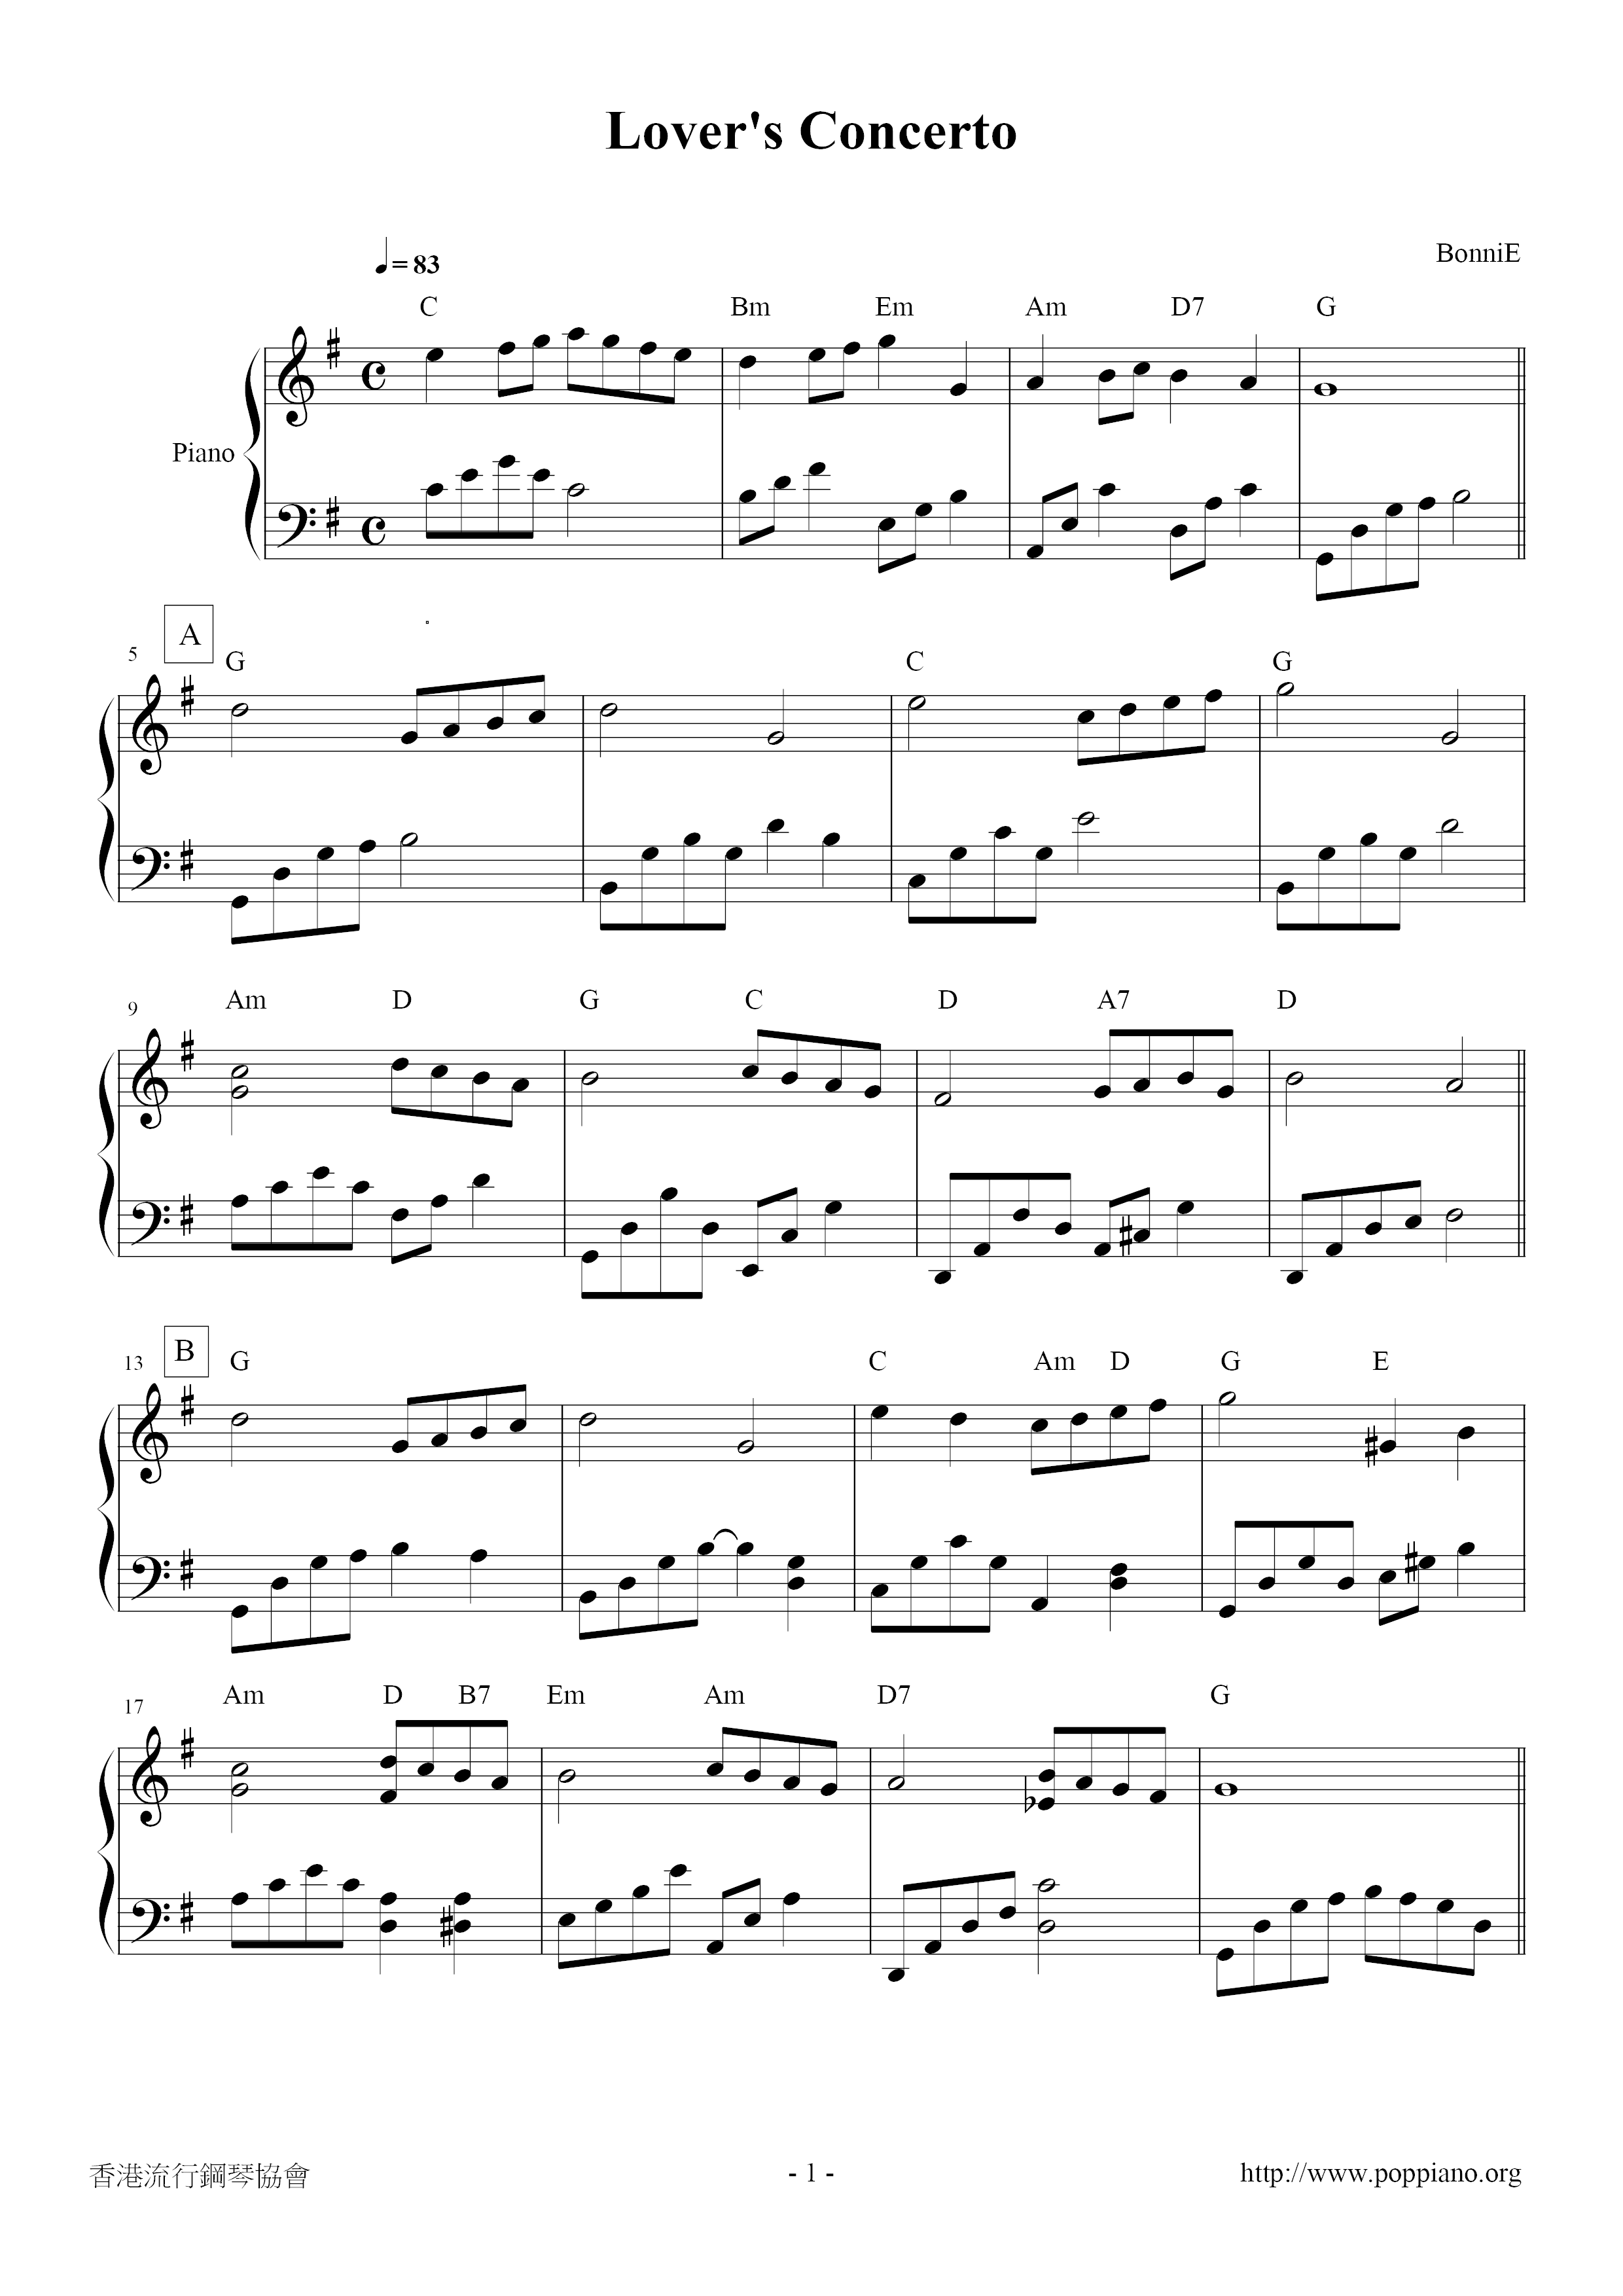 Lover's Concerto Score